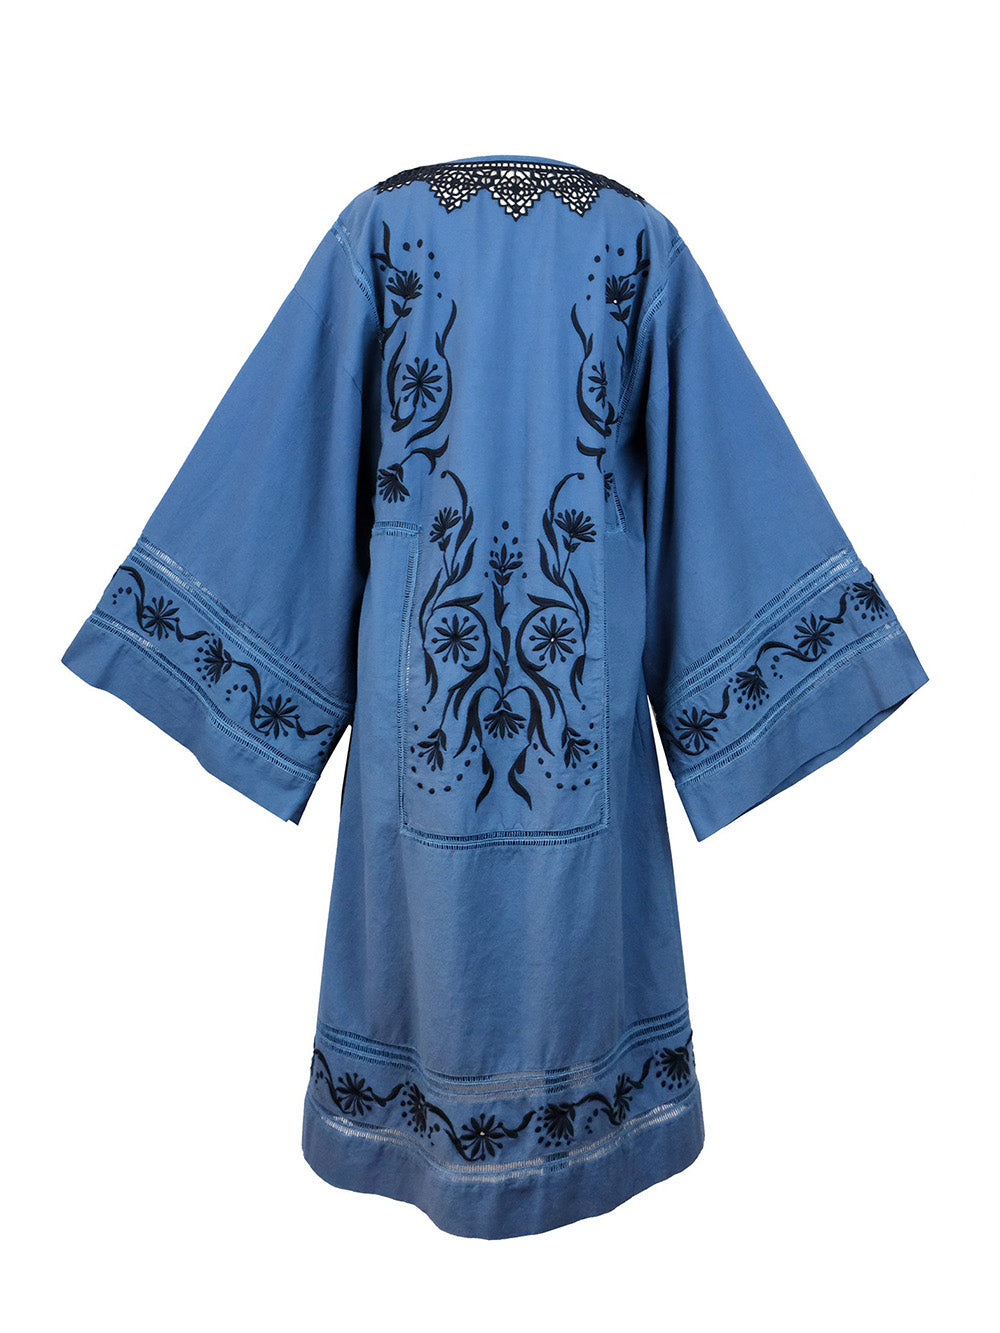 MAIA BLUE DRESS